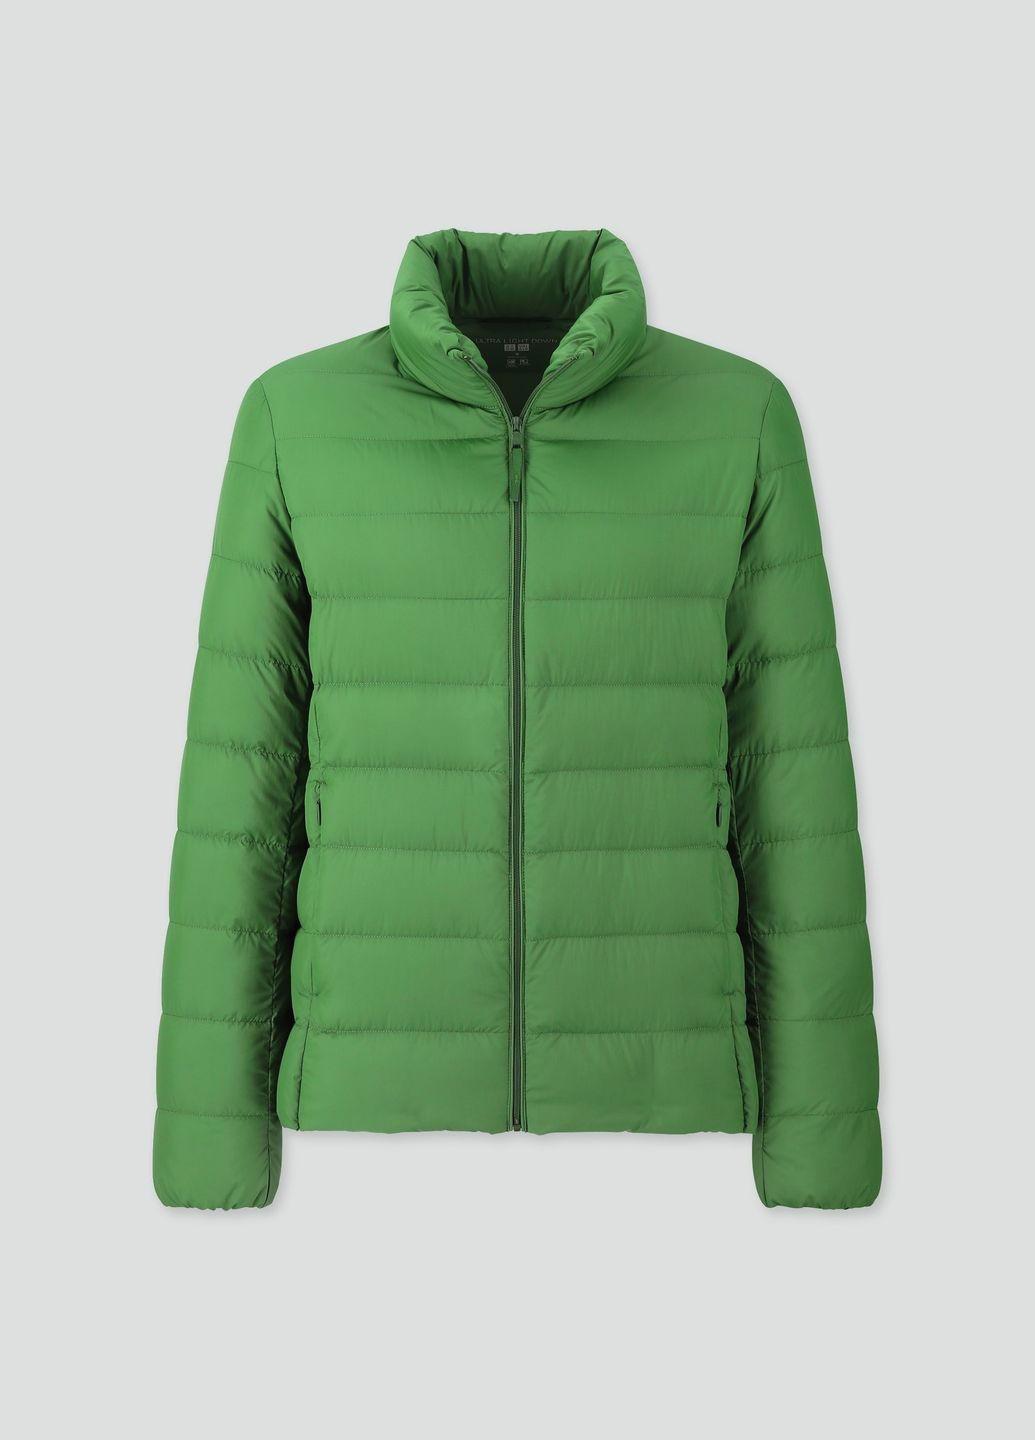 Зеленая демисезонная куртка демисезонная - женская куртка uq0326w Uniqlo